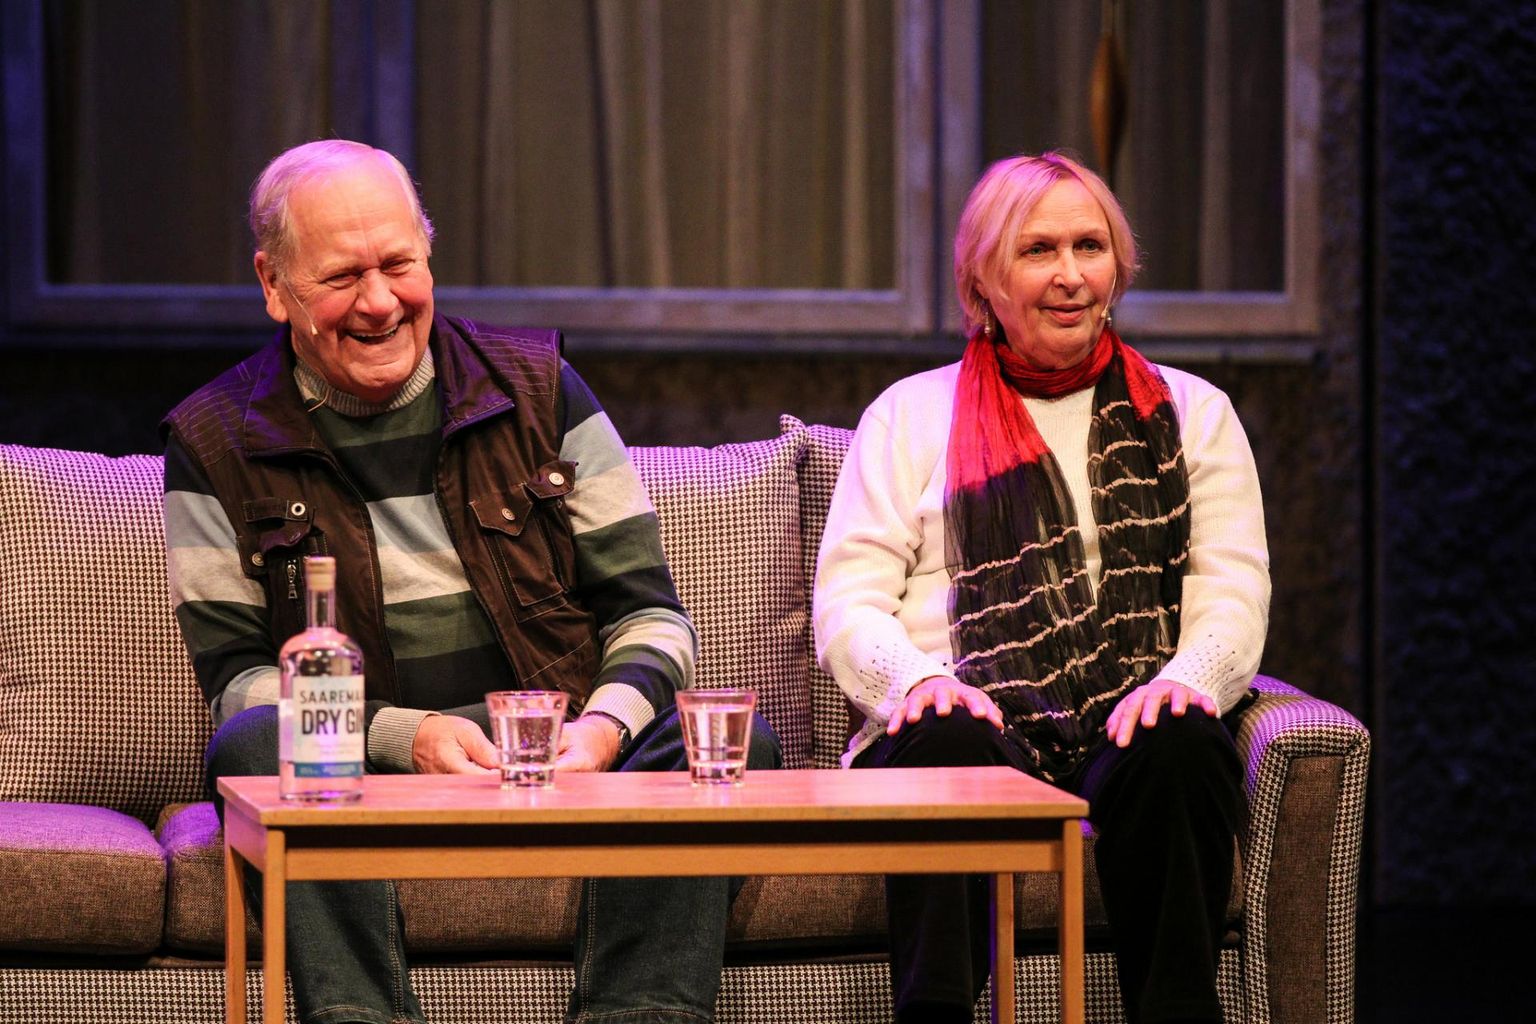 Ugala armastatud näitlejad Peeter Jürgens ja Luule Komissarov rääkisid vestlusõhtul meeleolukaid lugusid teatritegemisest.